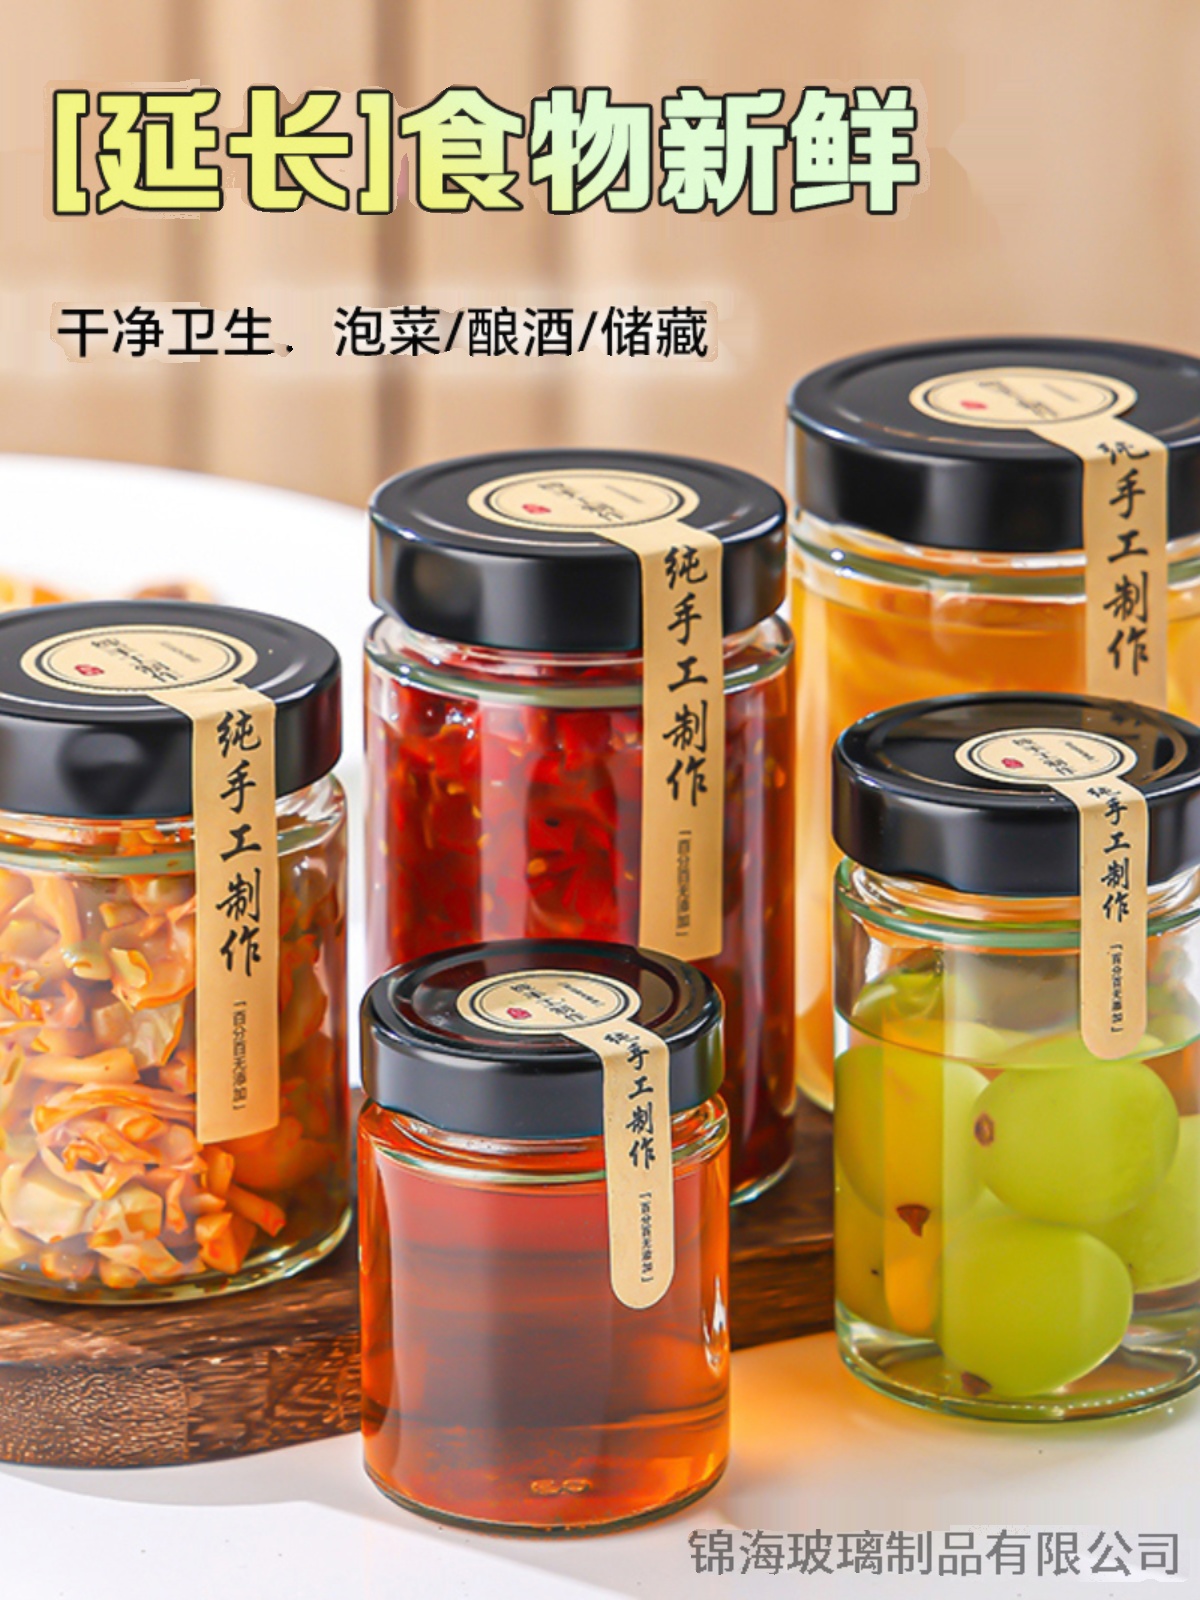 高蓋玻璃密封罐商用食品級檸檬秋梨膏辣椒果醬蜂蜜容器 (6.4折)